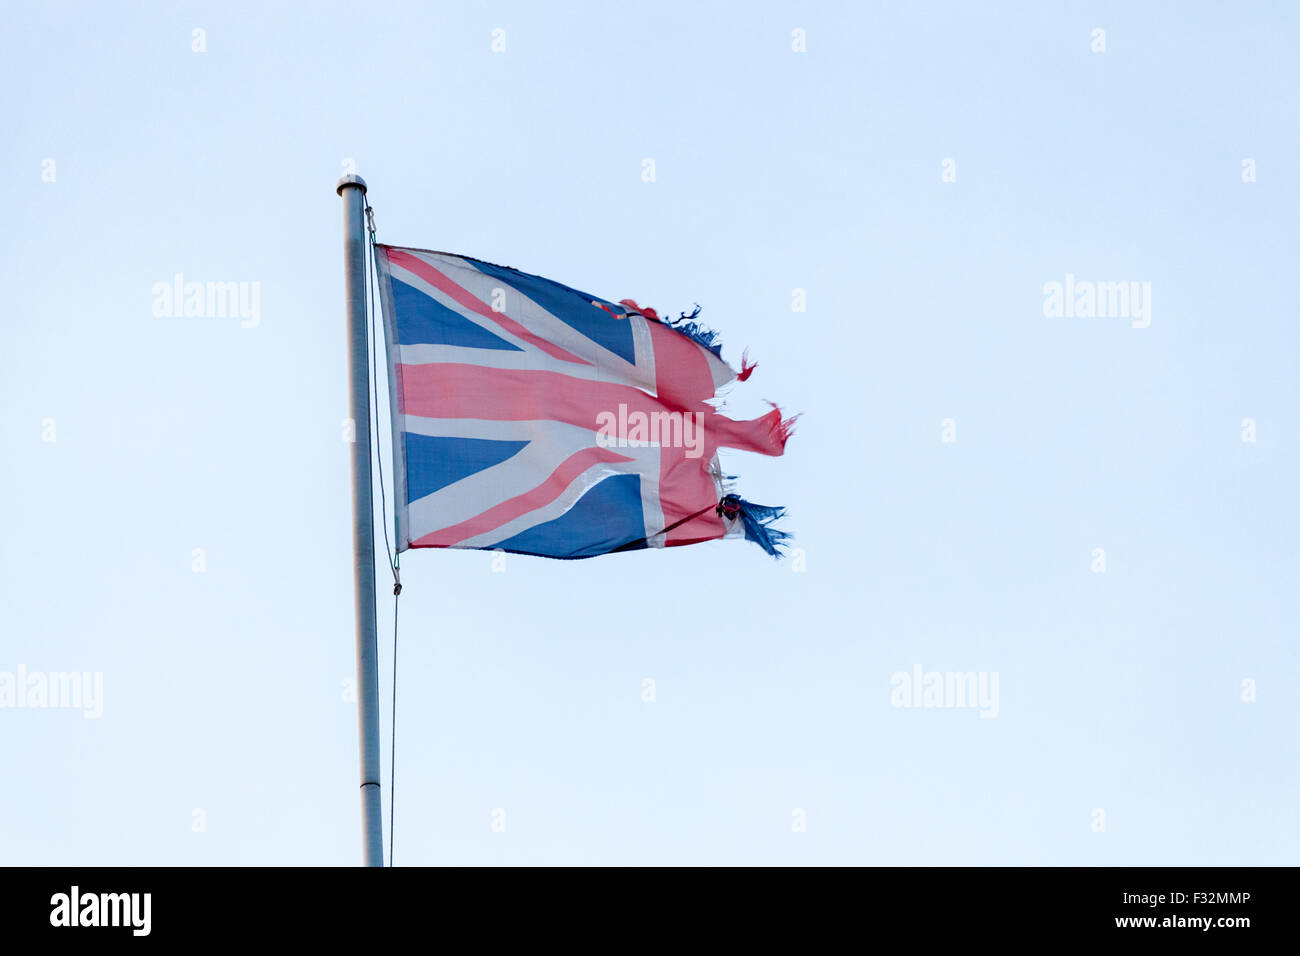 Drapeau UK Ripped. Déchiré en lambeaux et Union Jack suggérant une indépendance ou concept Brexit Banque D'Images